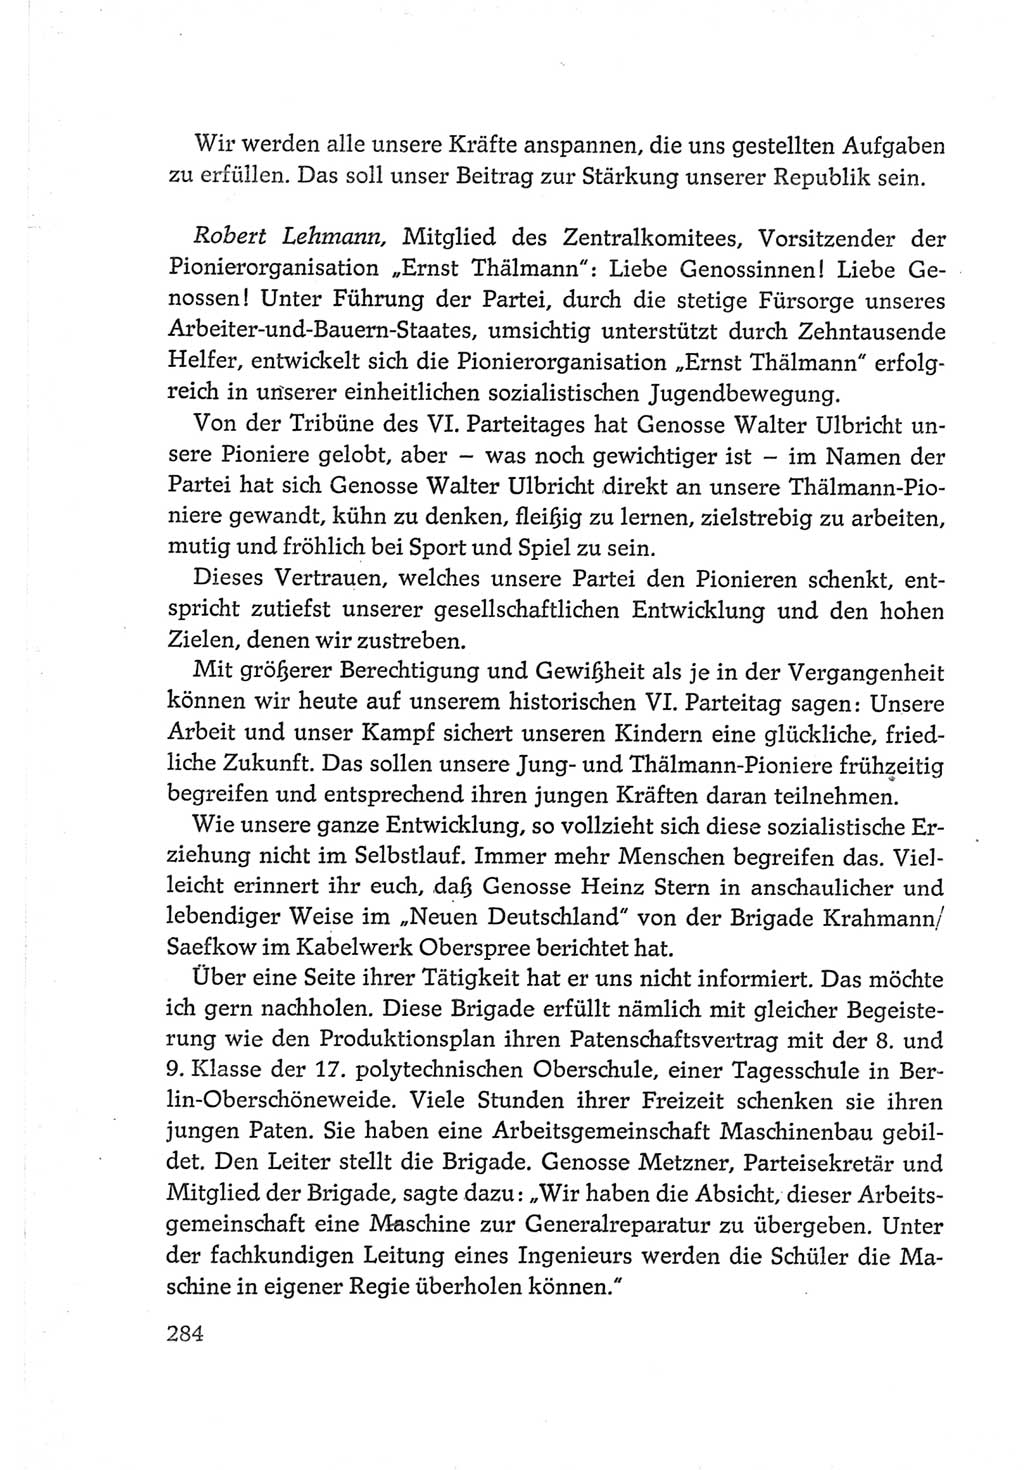 Protokoll der Verhandlungen des Ⅵ. Parteitages der Sozialistischen Einheitspartei Deutschlands (SED) [Deutsche Demokratische Republik (DDR)] 1963, Band Ⅲ, Seite 284 (Prot. Verh. Ⅵ. PT SED DDR 1963, Bd. Ⅲ, S. 284)